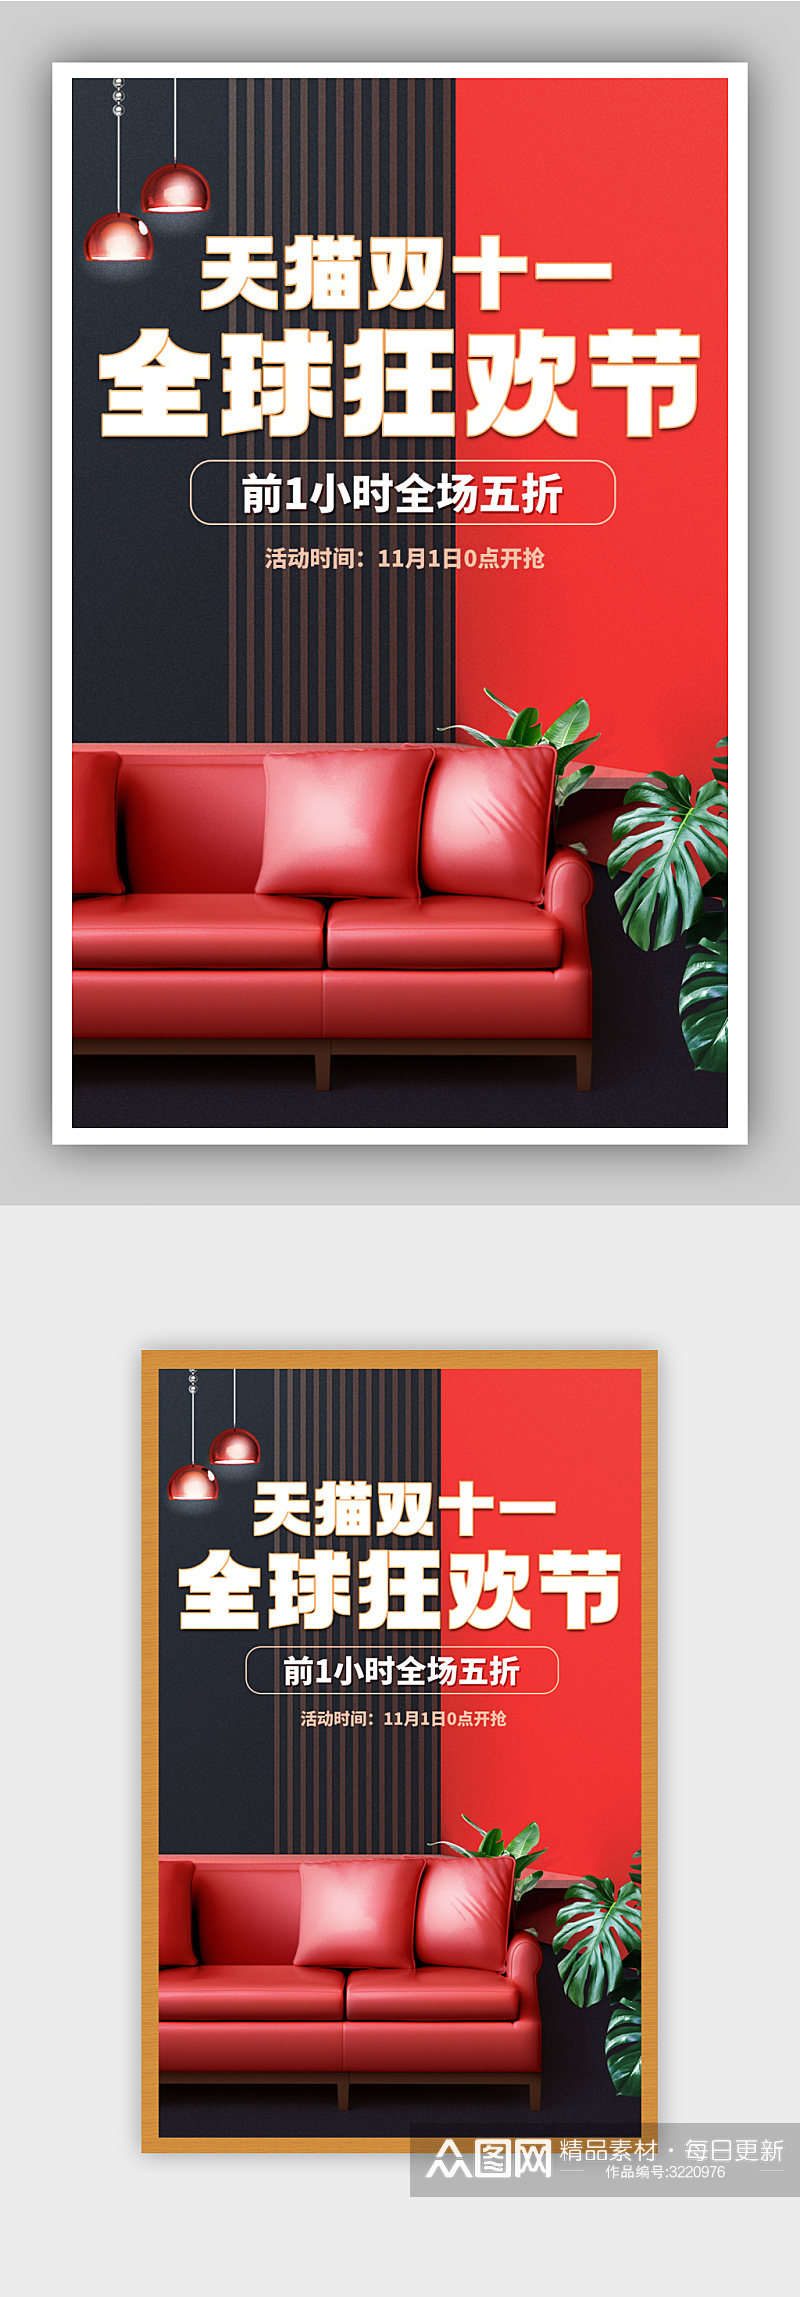 时尚红色大气风格天猫双十一家具沙发海报素材